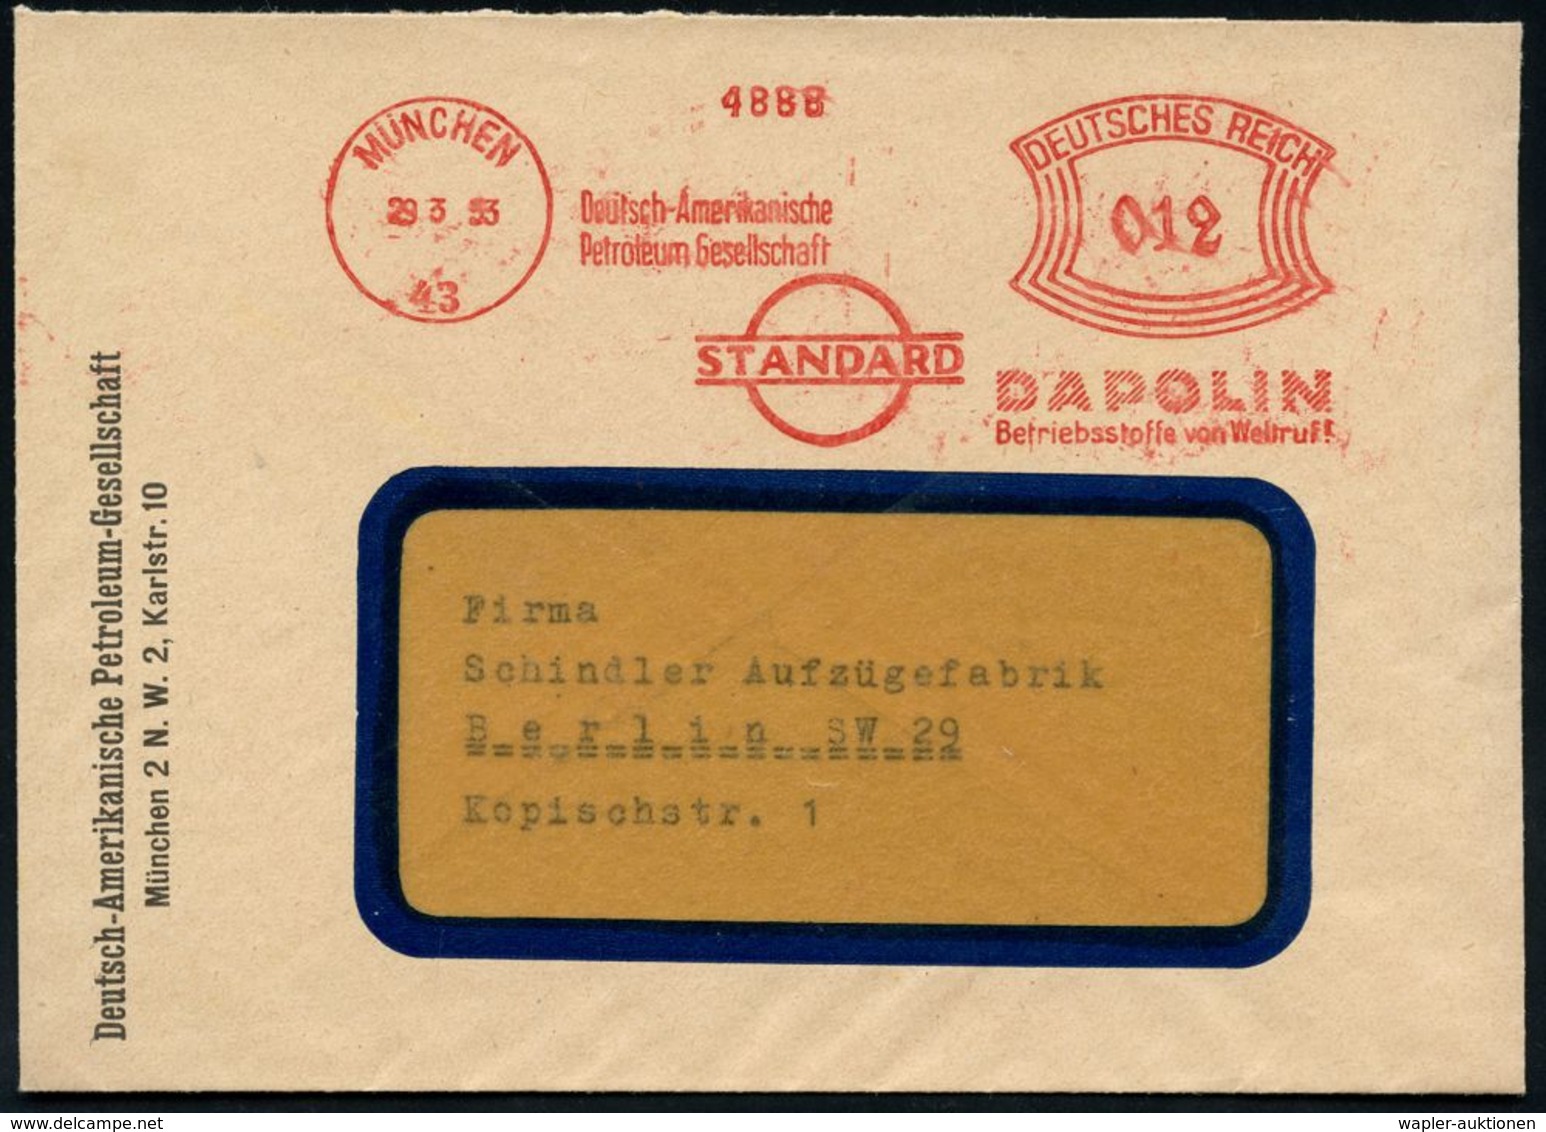 MINERALÖL & KRAFTSTOFFE / TECHNISCHE ÖLE : MÜNCHEN/ 43/ Deutsch-Amerikanische/ Petroleum-Ges./ STANDARD/ DAPOLIN.. 1933  - Chimie